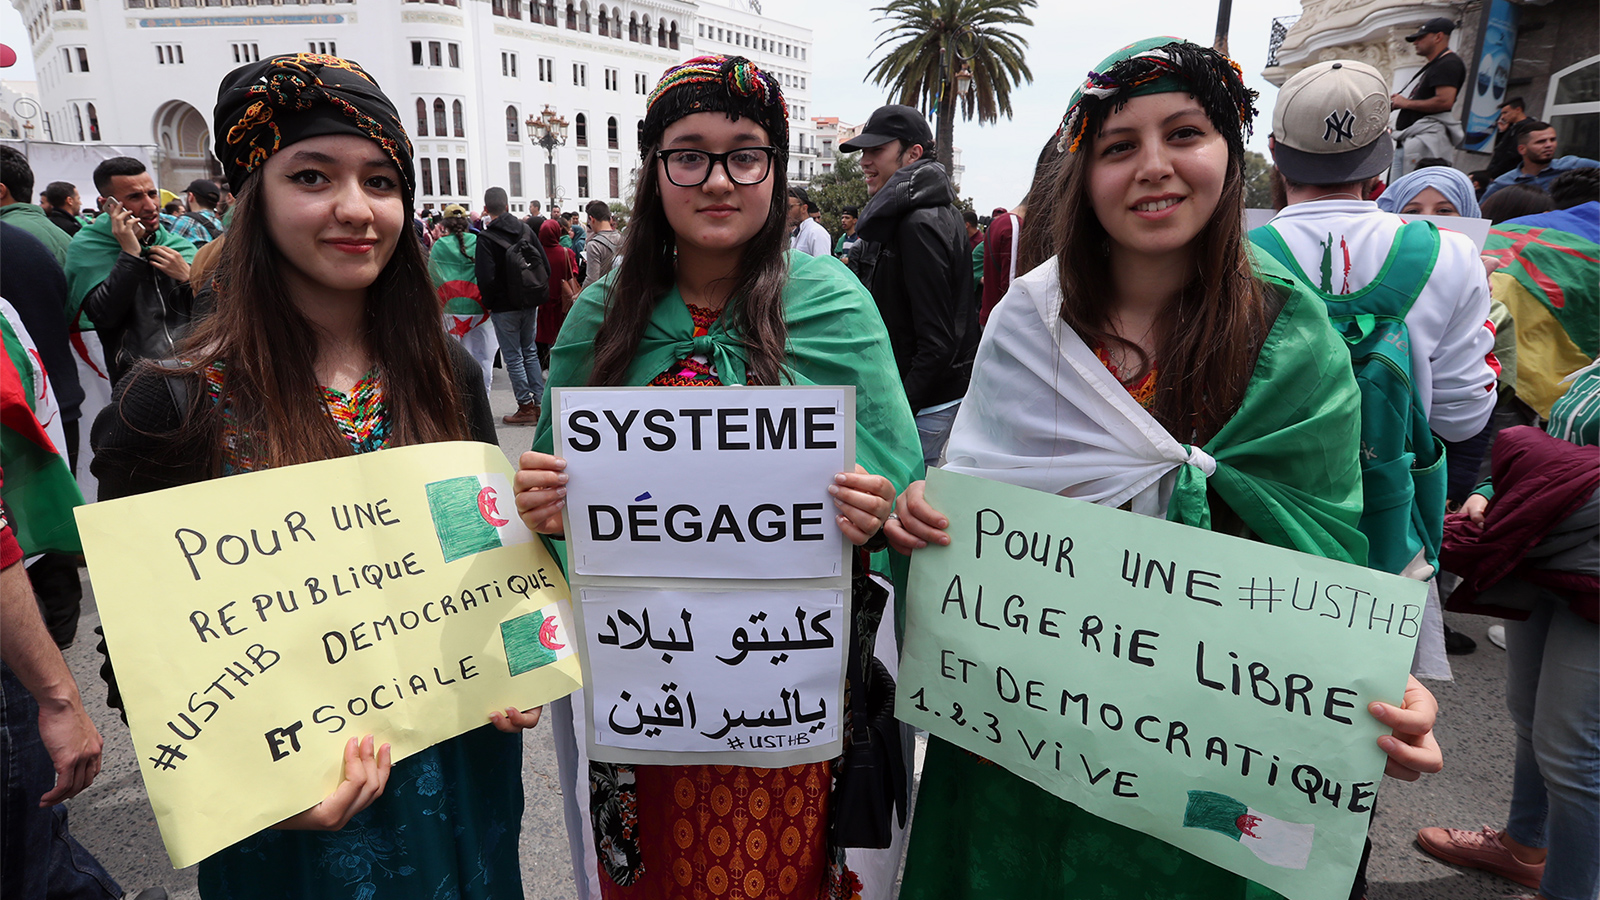 ‪(الأوروبية)‬ الجزائريون بدؤوا حراكهم منذ 22 فبراير/شباط الماضي